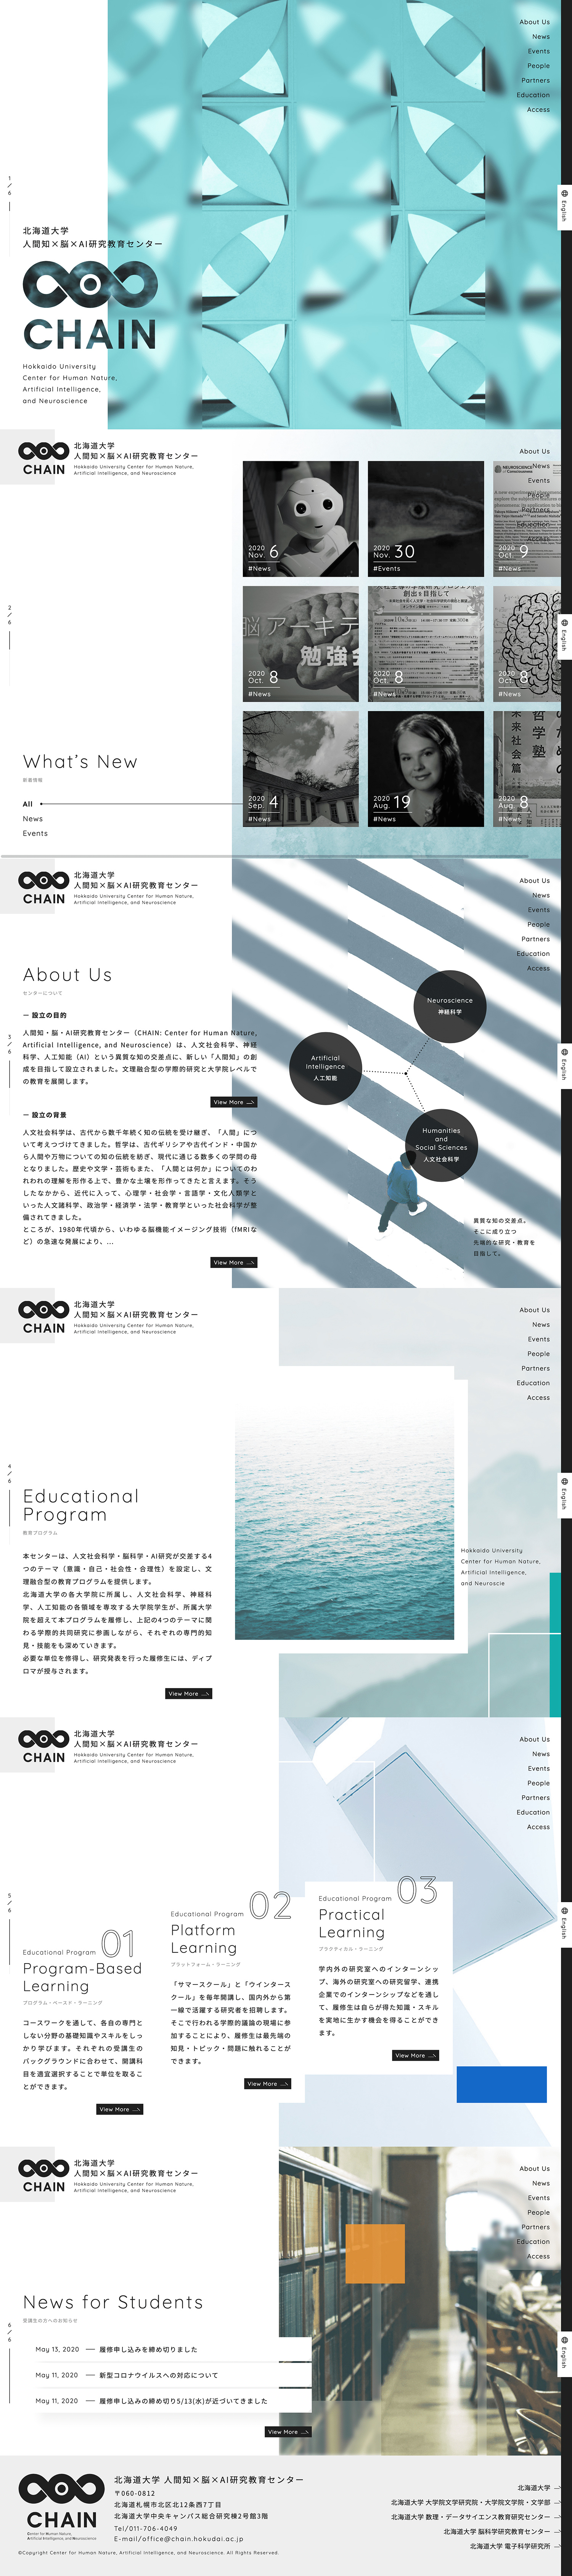 北海道大学AI研究教育中心网站设计